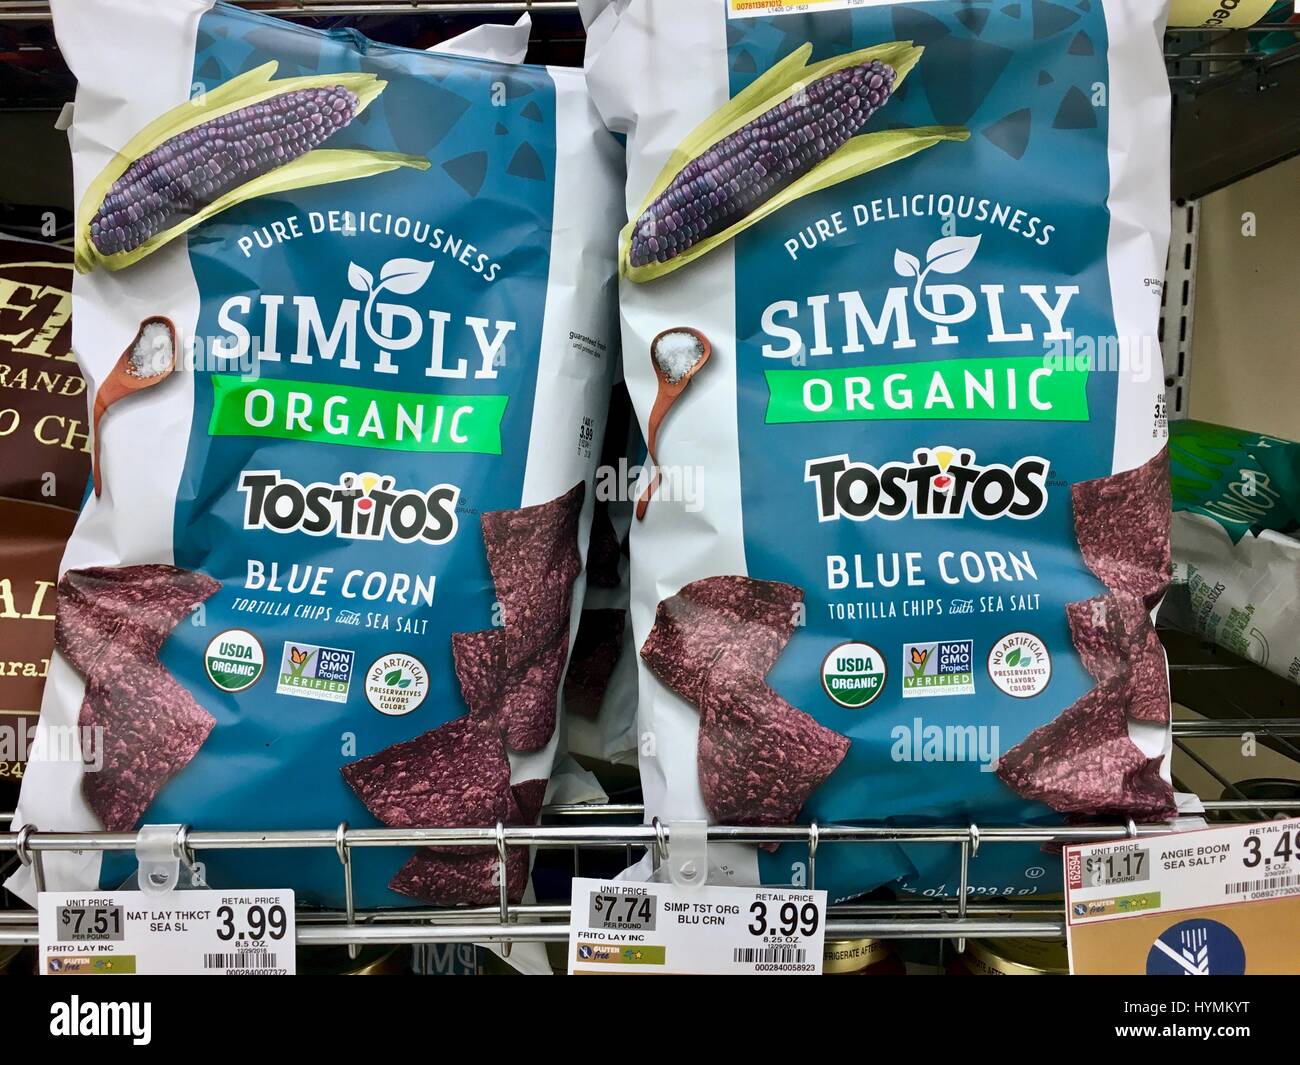 Simply organic tostitos Stock Photo